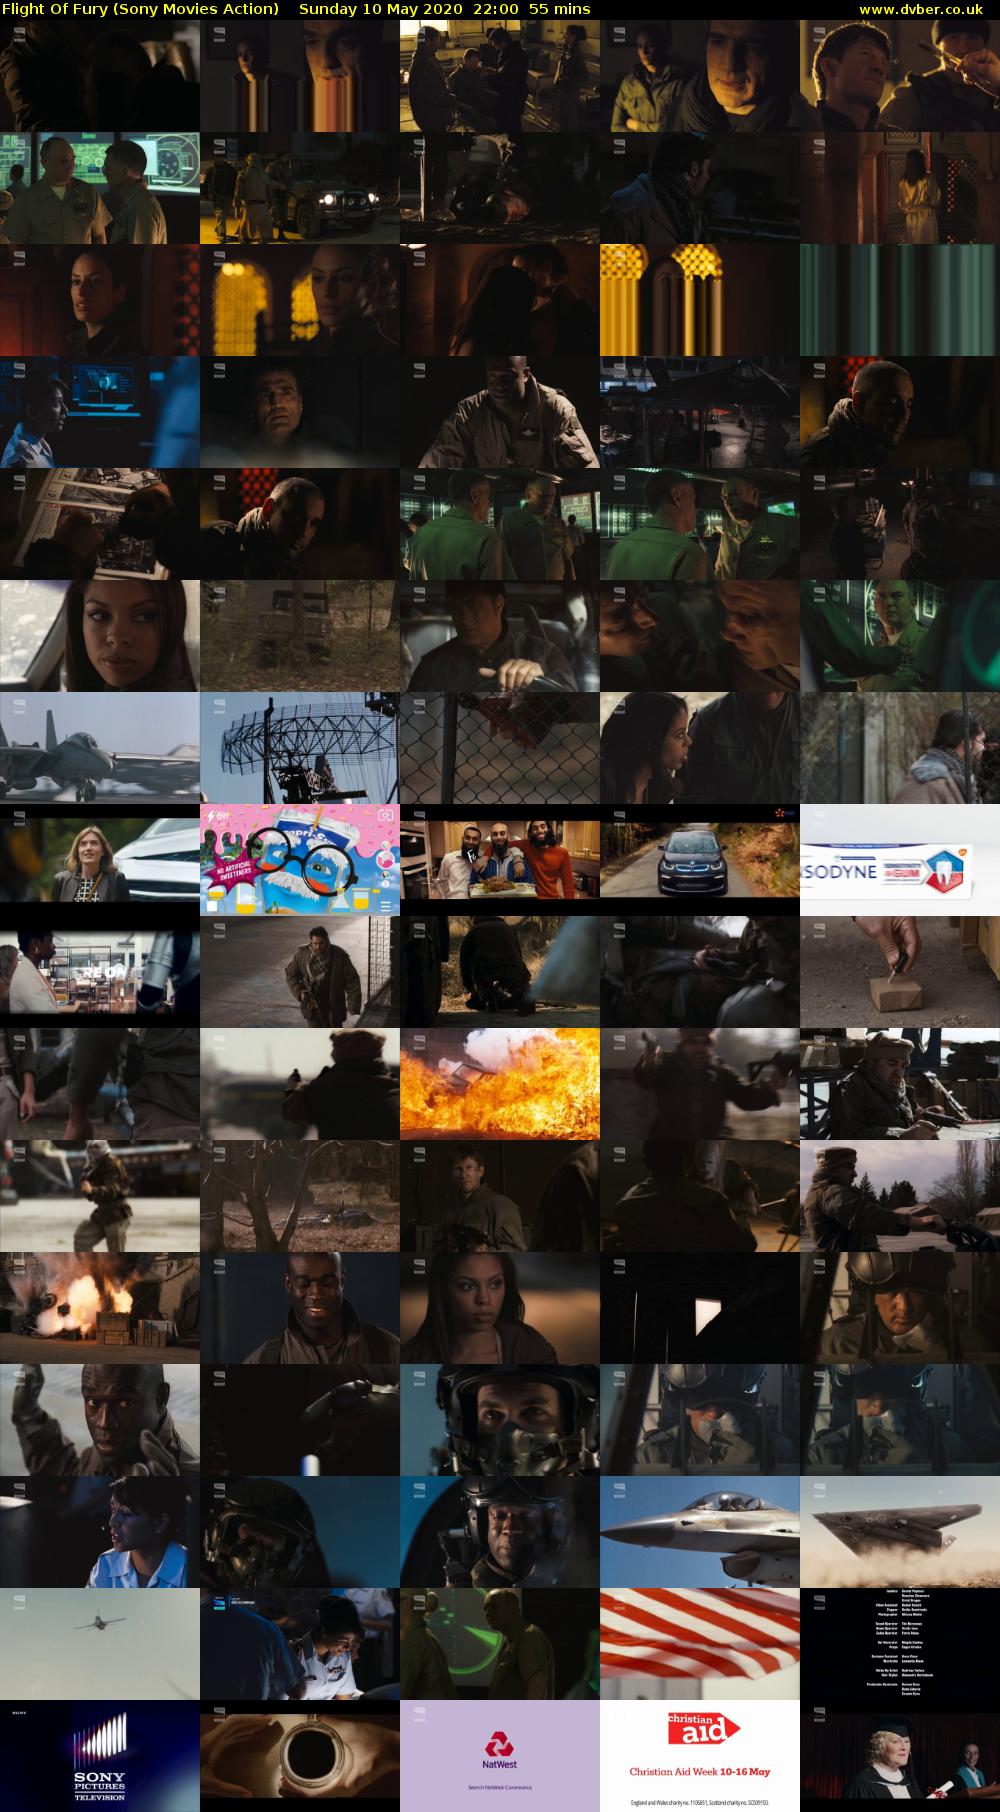 Flight Of Fury (Sony Movies Action) Sunday 10 May 2020 22:00 - 22:55